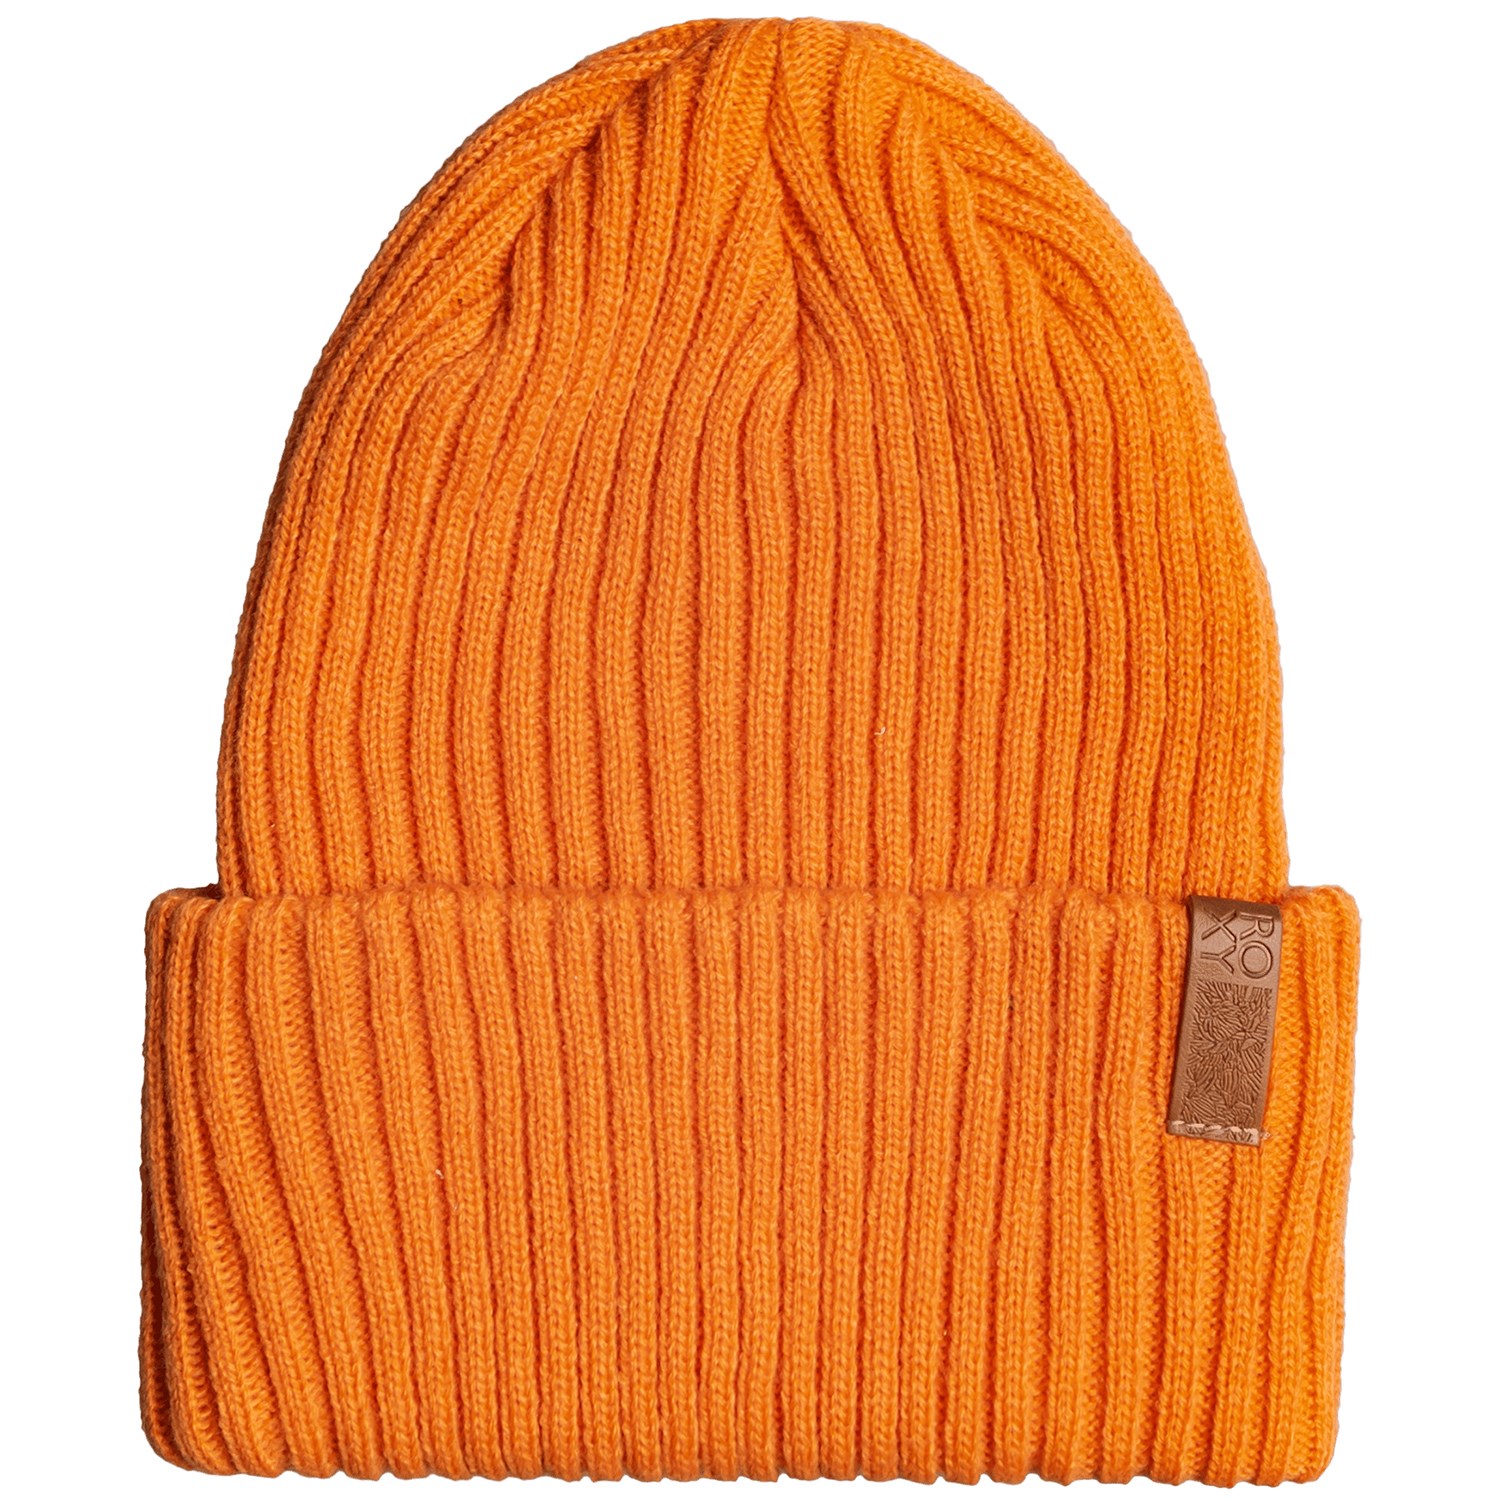 Шапка - Бини Roxy Dynabeat женская, оранжевый шапка бини шапка зимняя мужская женская кусто осенняя шапка шапка укороченная короткая шапочка с подворотом шерстяная